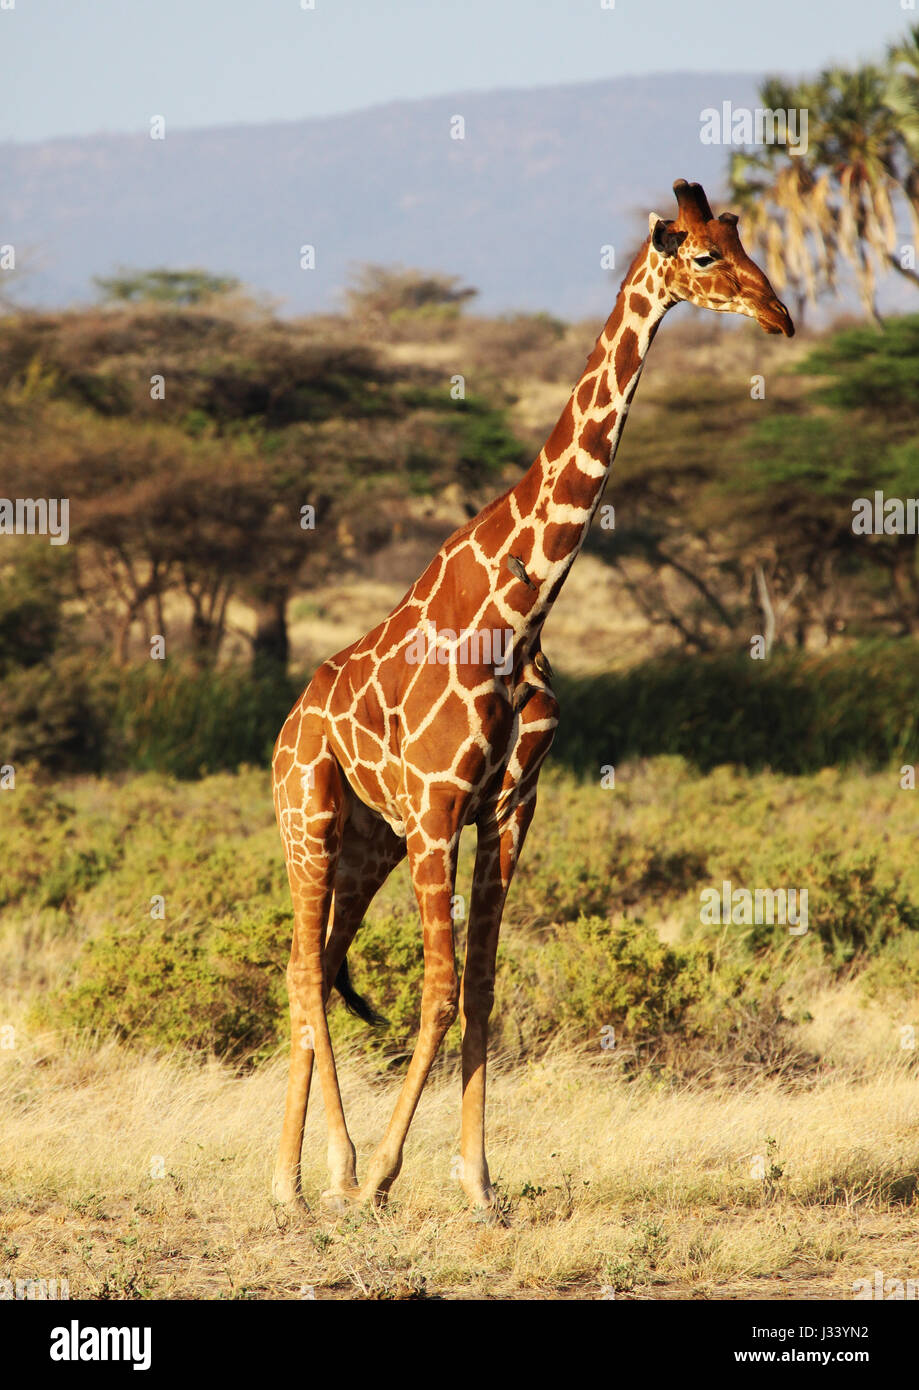 Reticulated giraffe walking Stock Photo